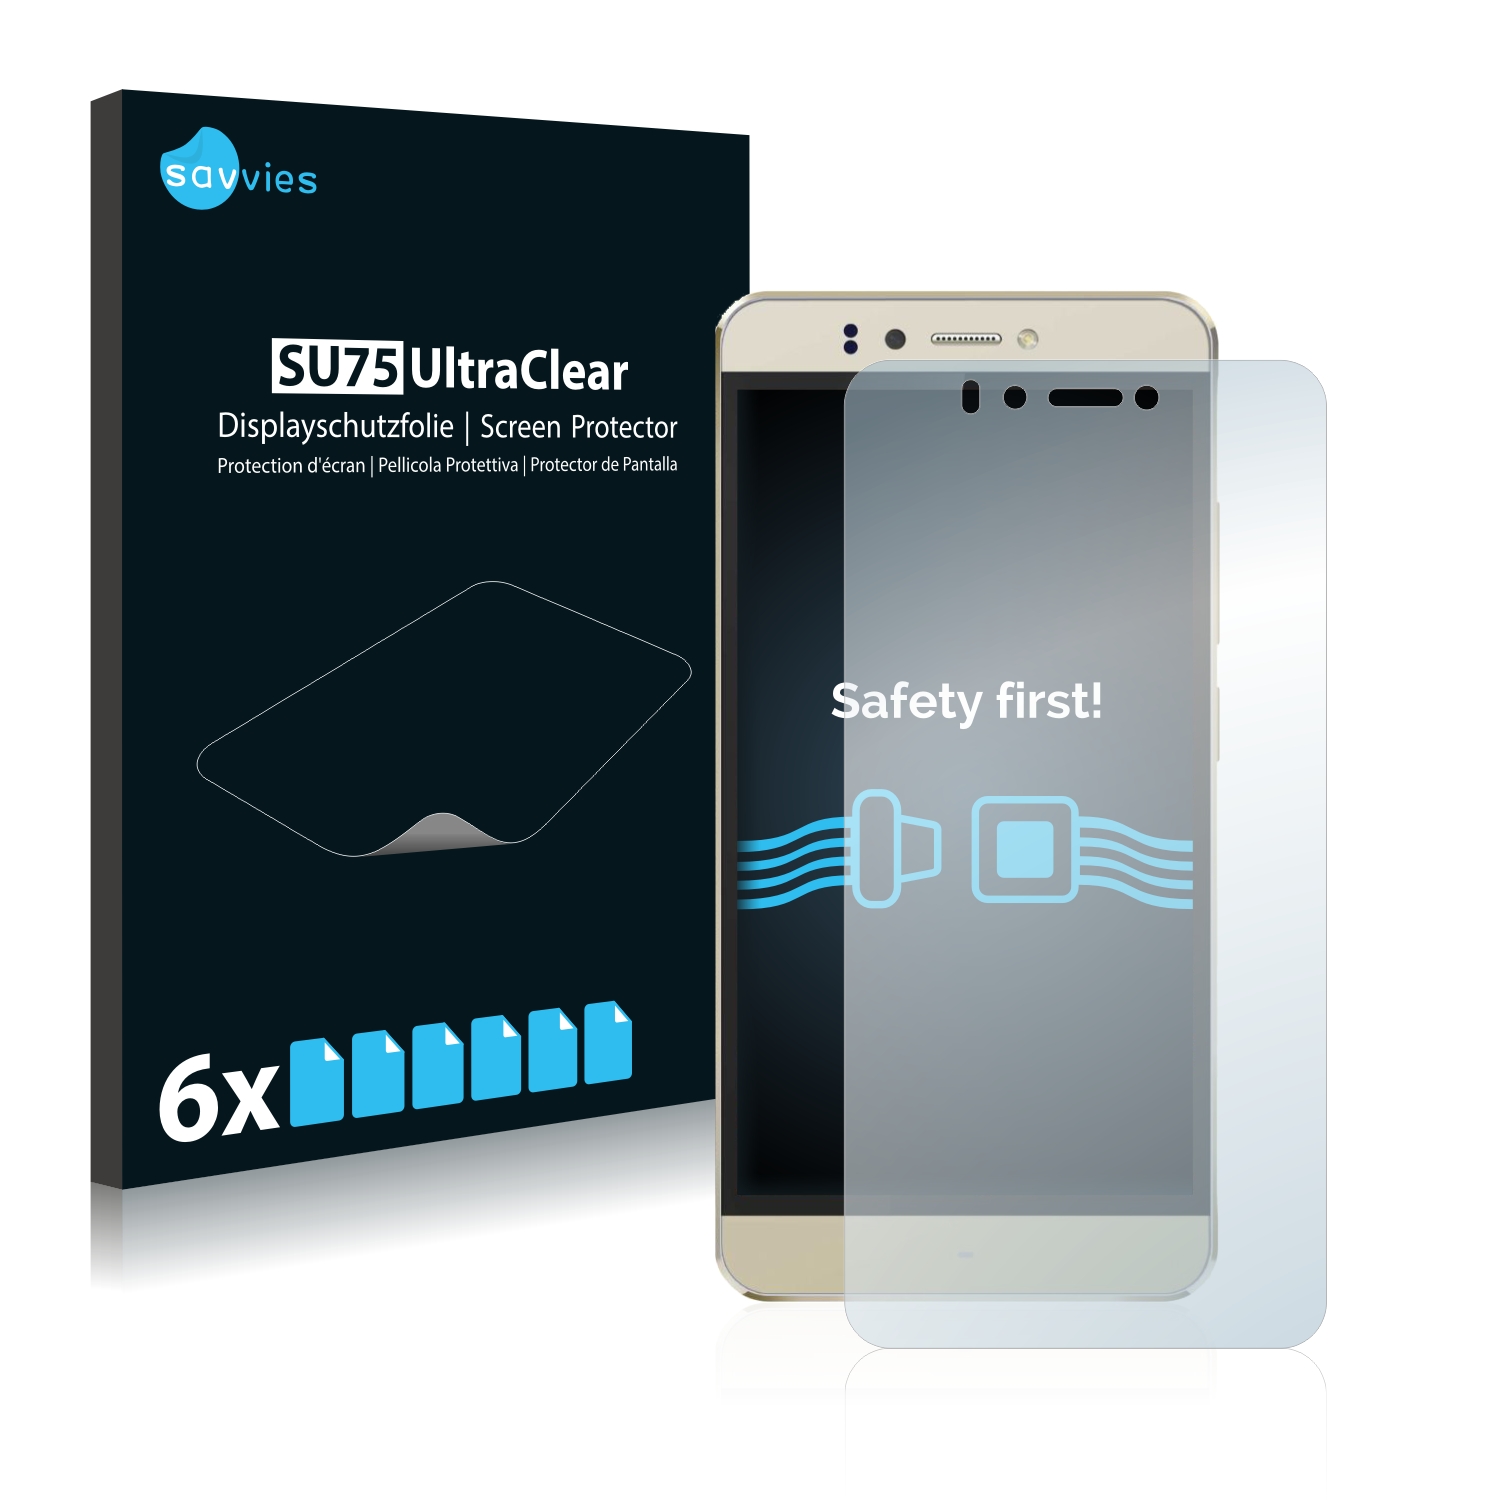 6x Savvies SU75 čirá ochranná fólie pro Mediacom PhonePad Duo S531